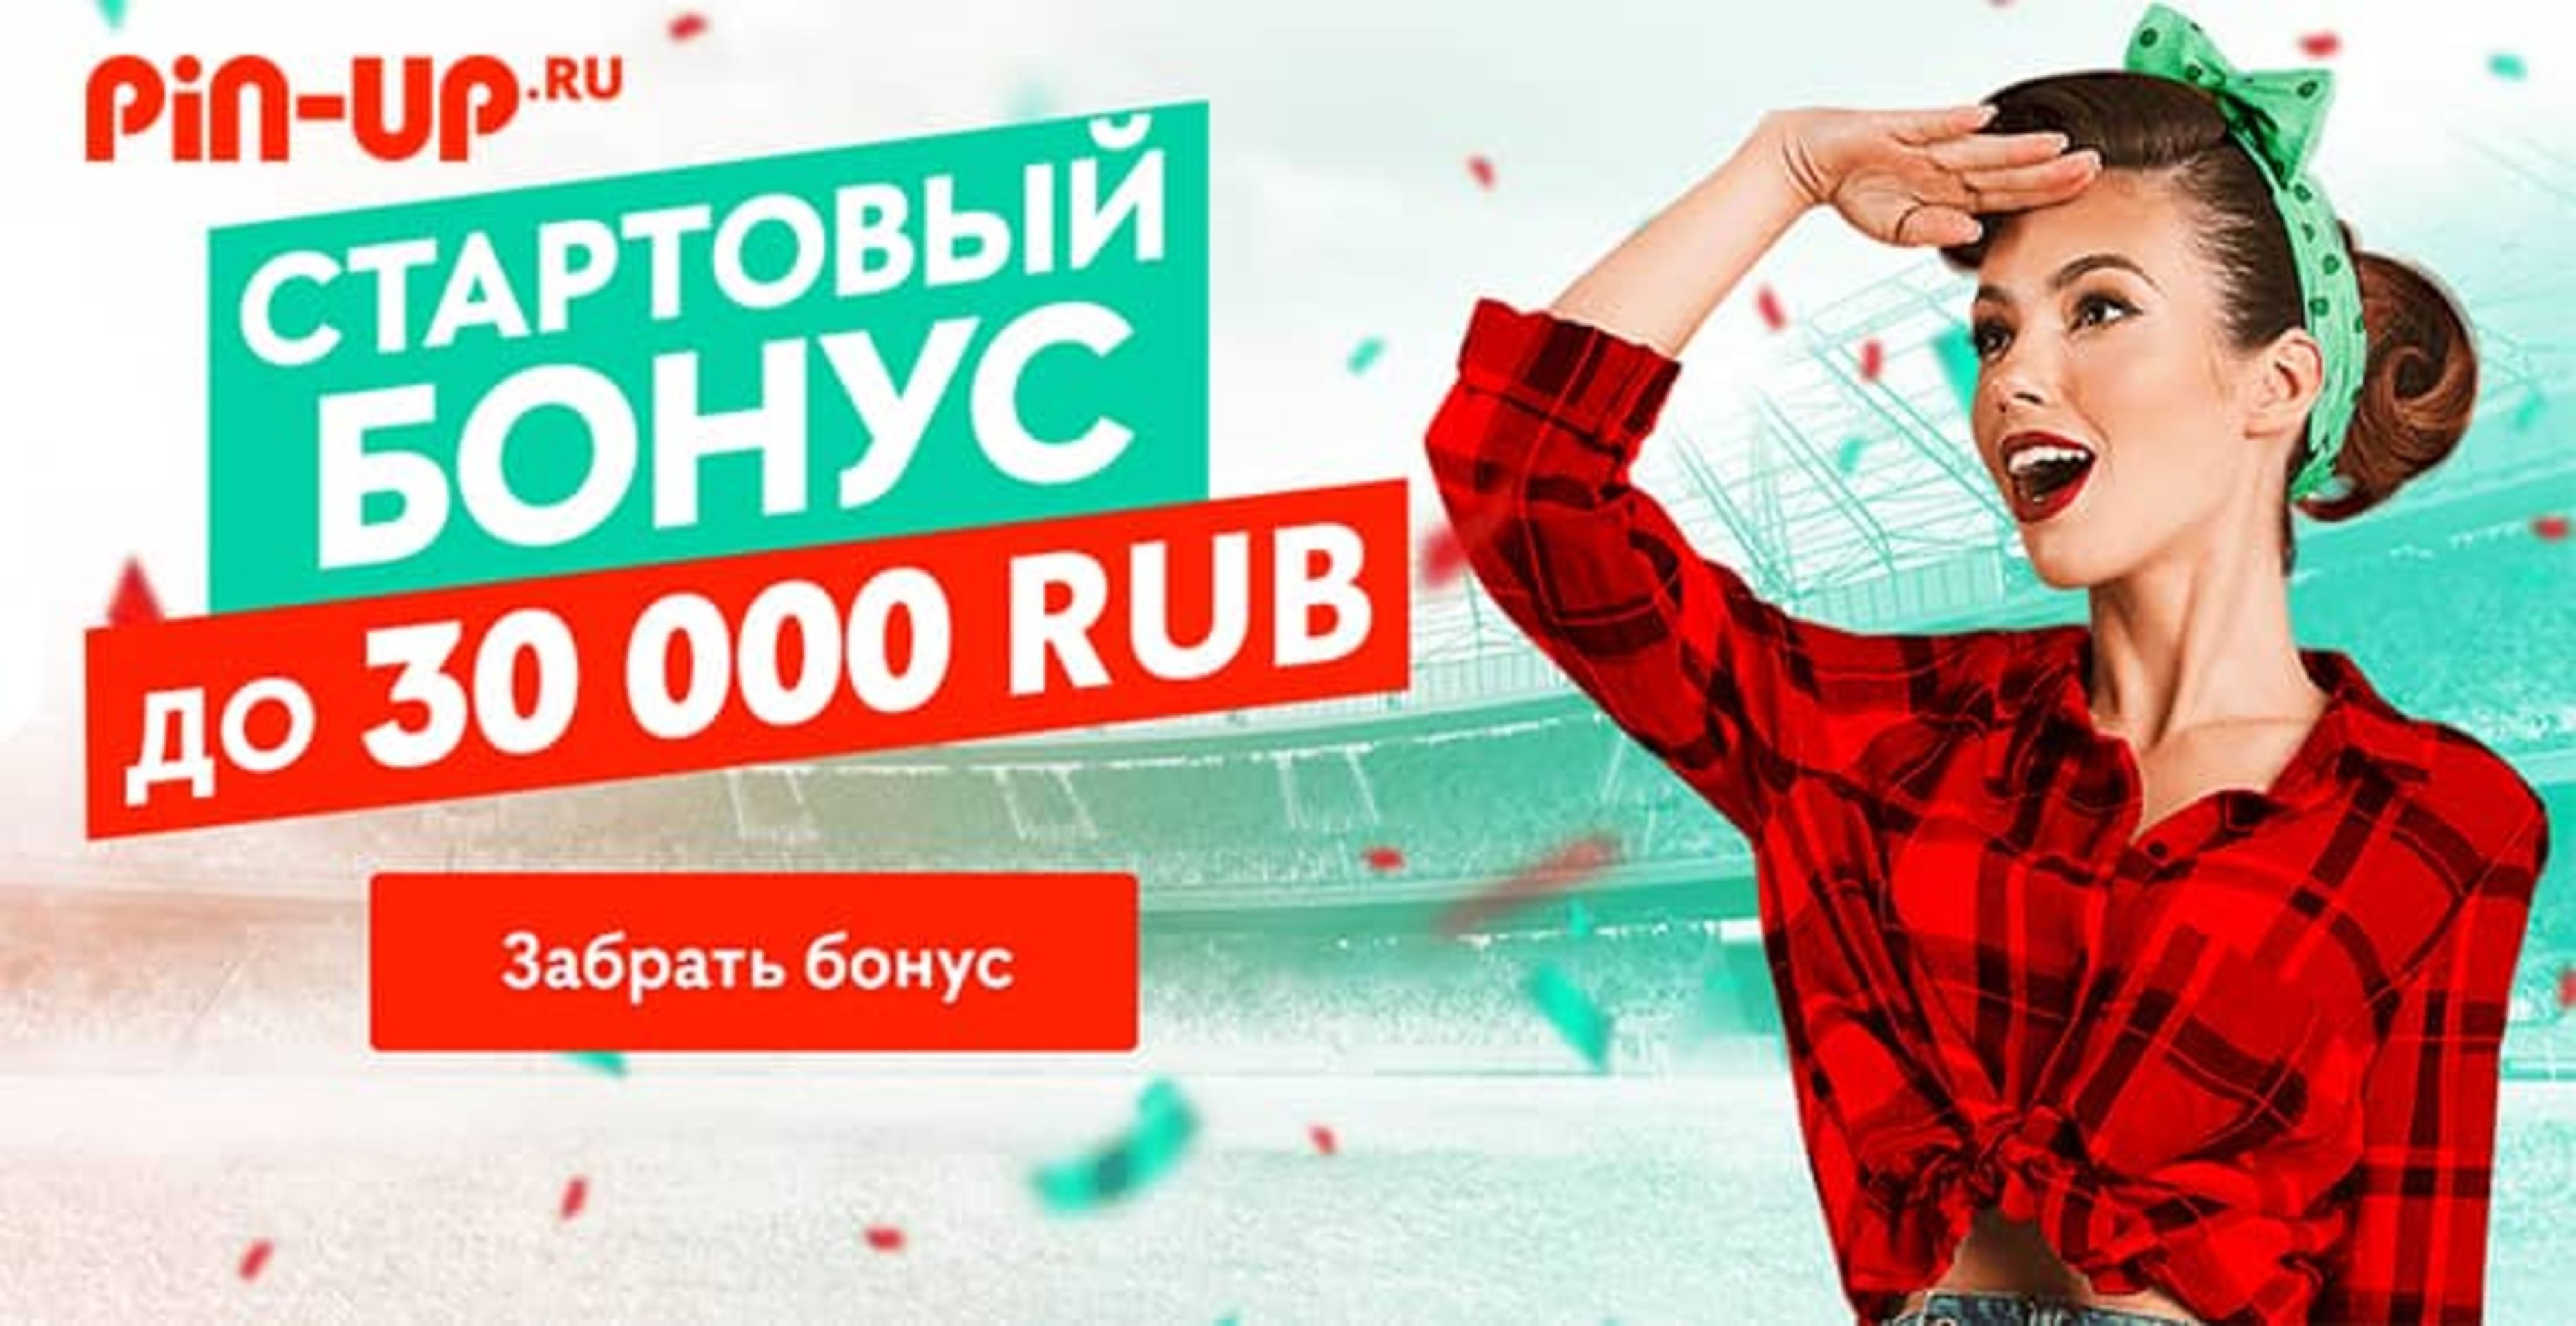 Pin-up.ru предлагает новым клиентам до 30000 рублей за регистрацию и депозит